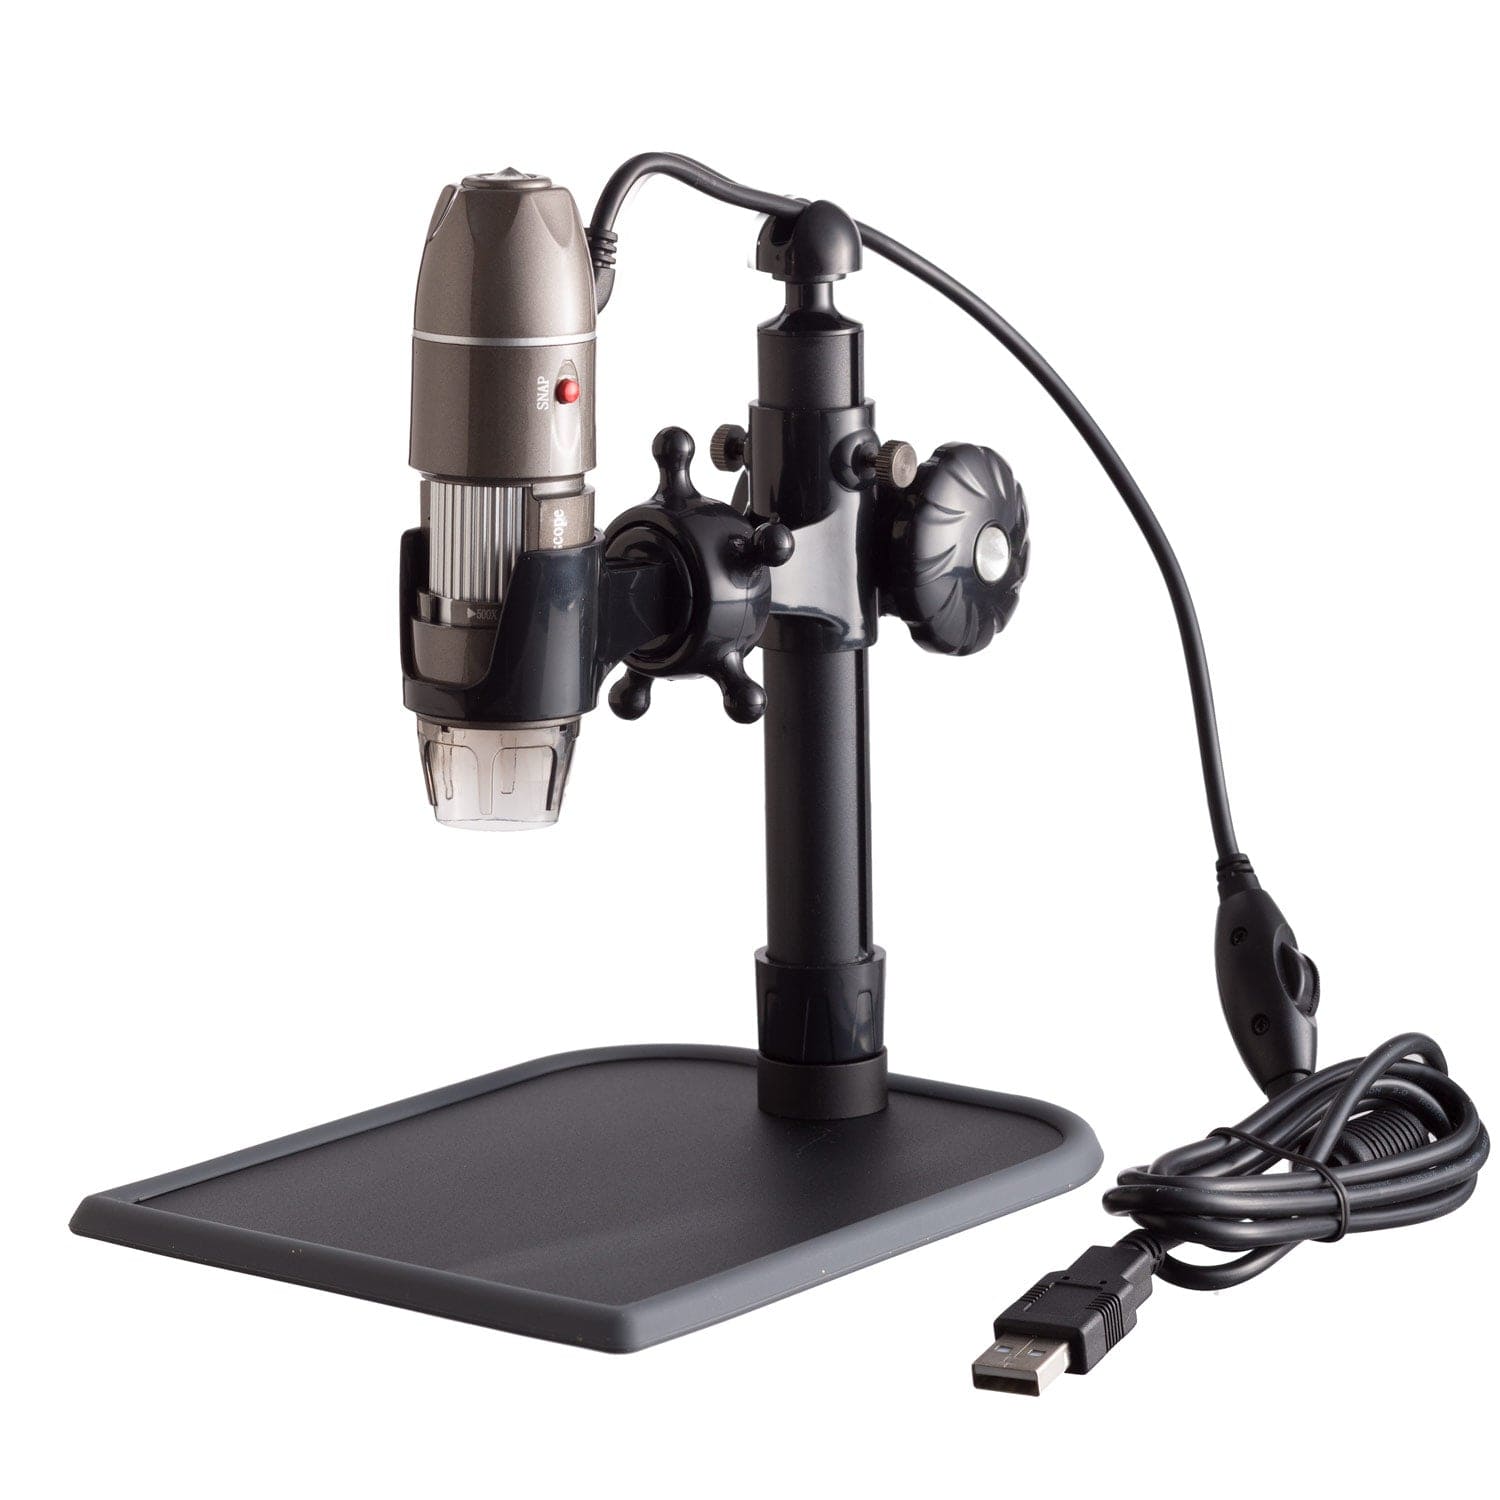 5X-500X Handheld USB Digital Microscope with LED Illumination – AmScope